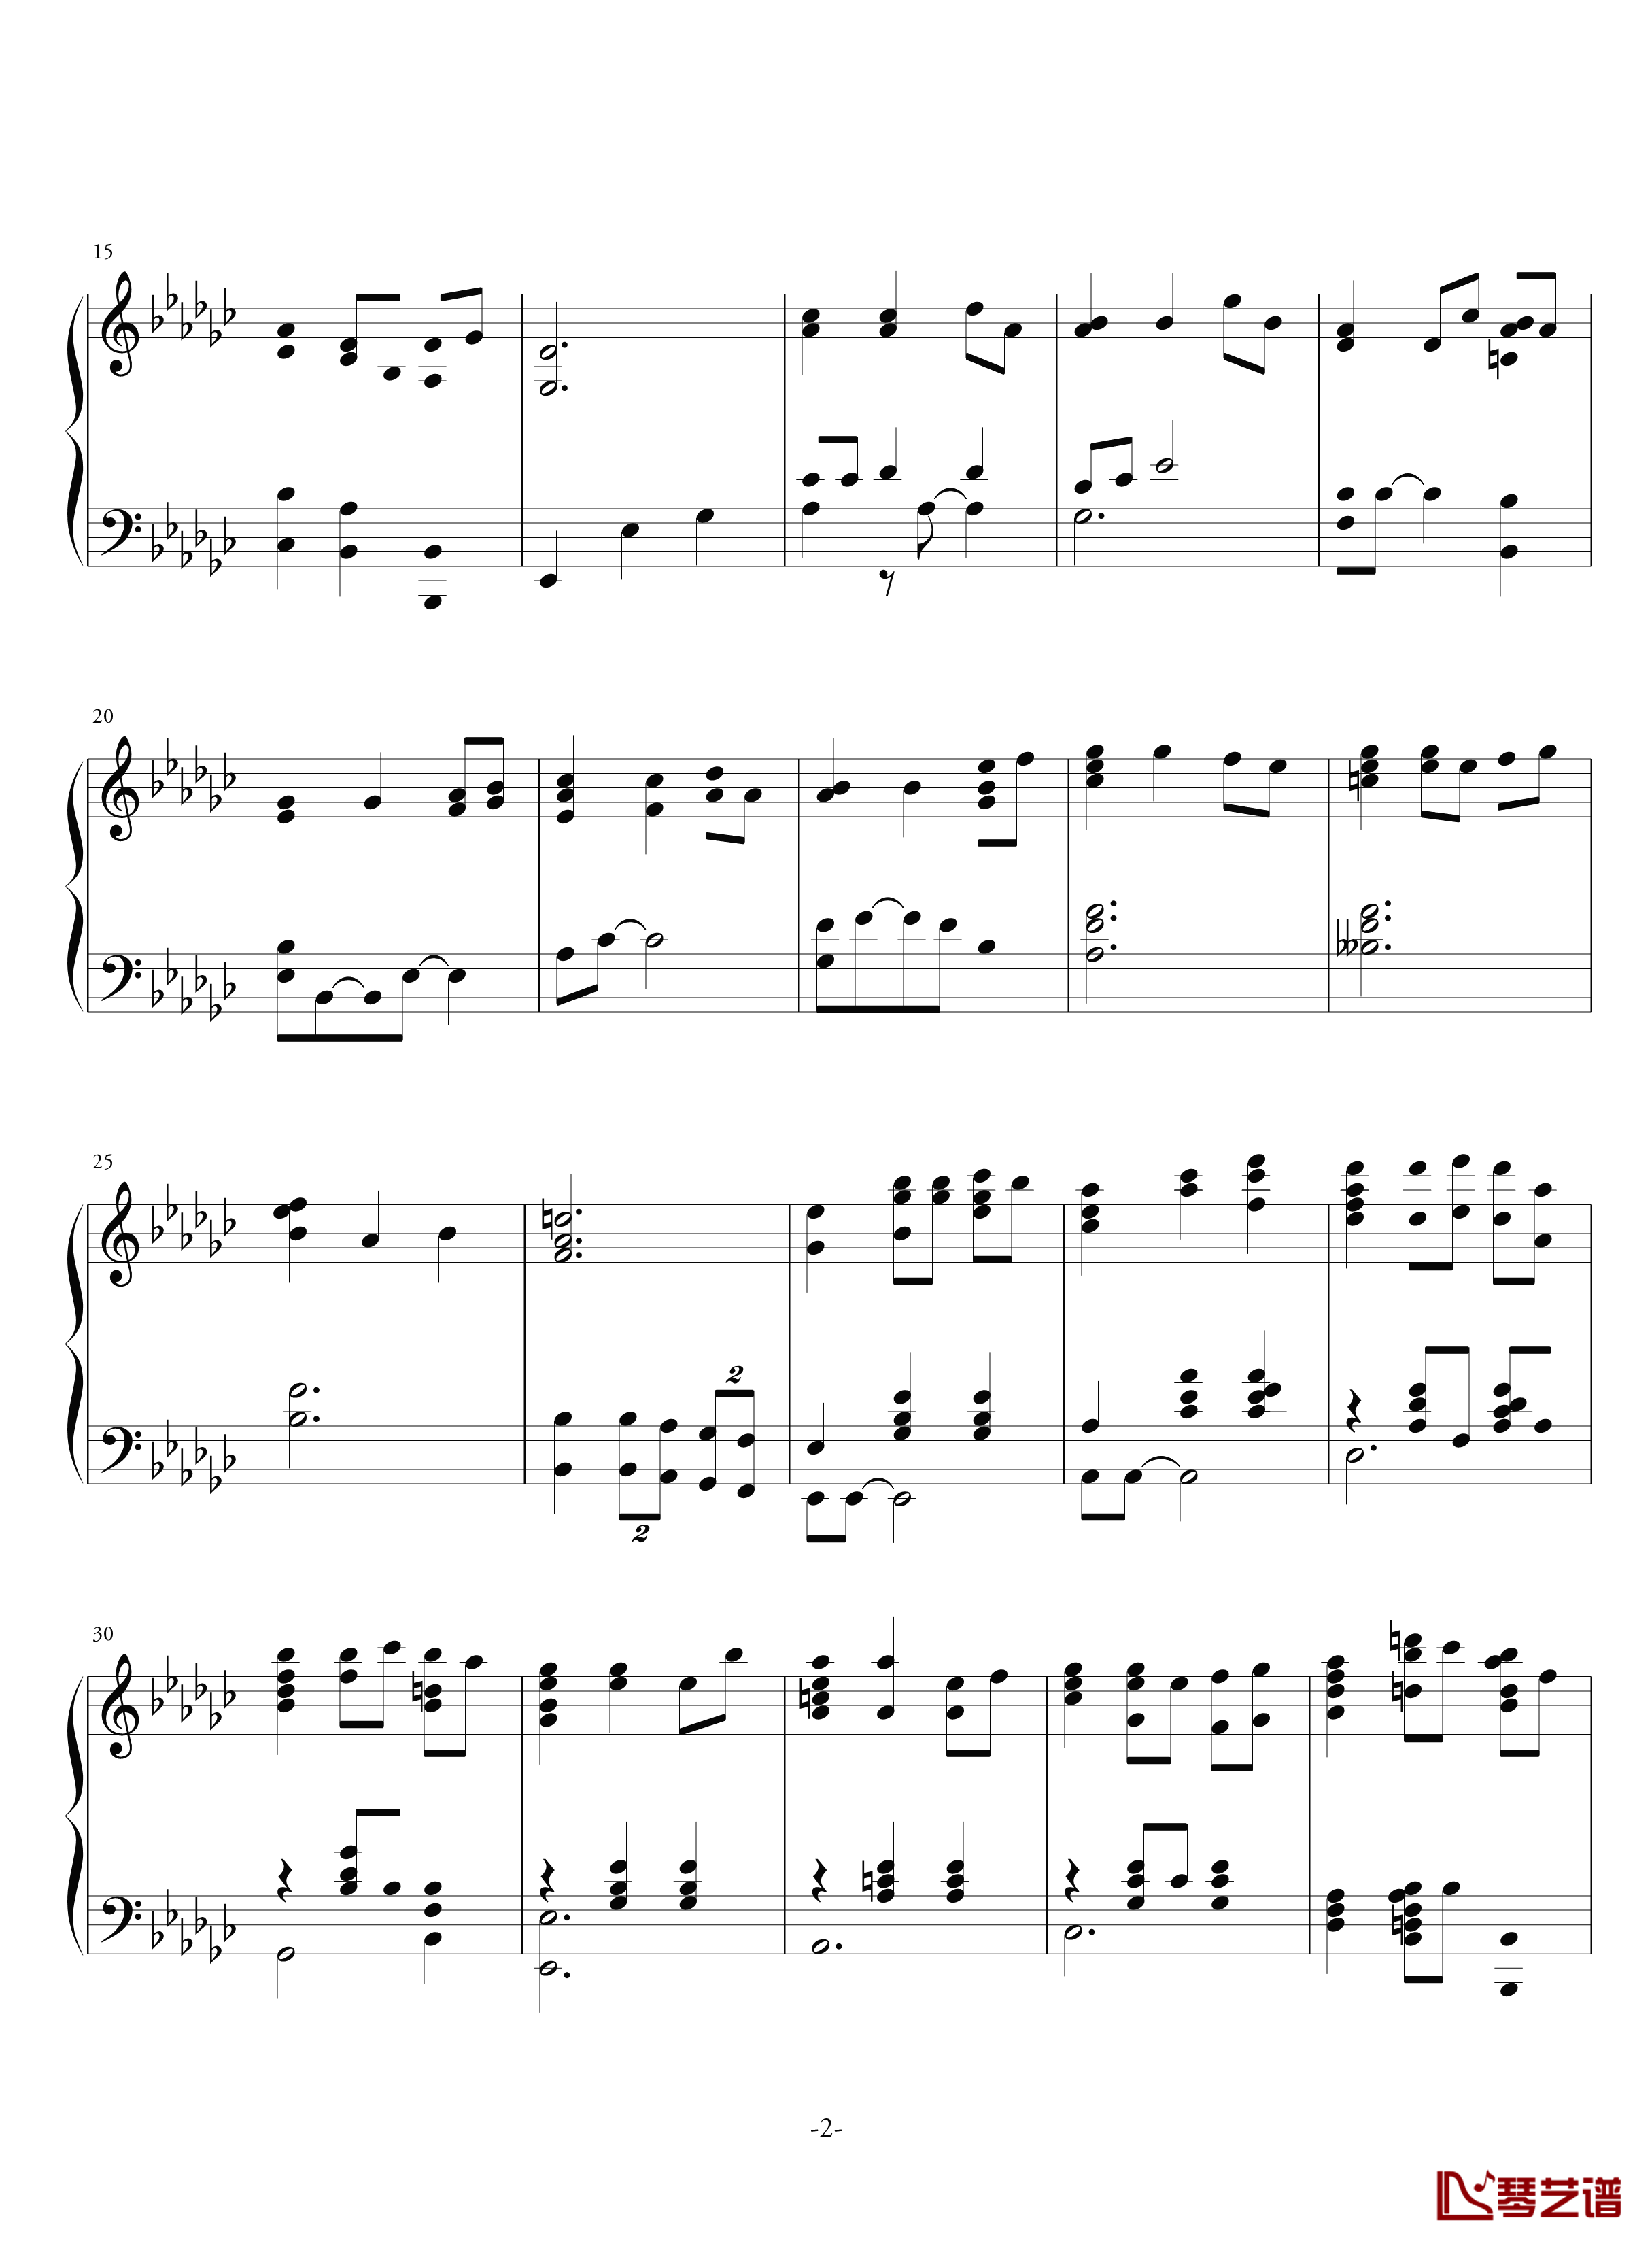 空心人偶的游乐园钢琴谱-反-aqtq314-白蔷薇组曲⒊